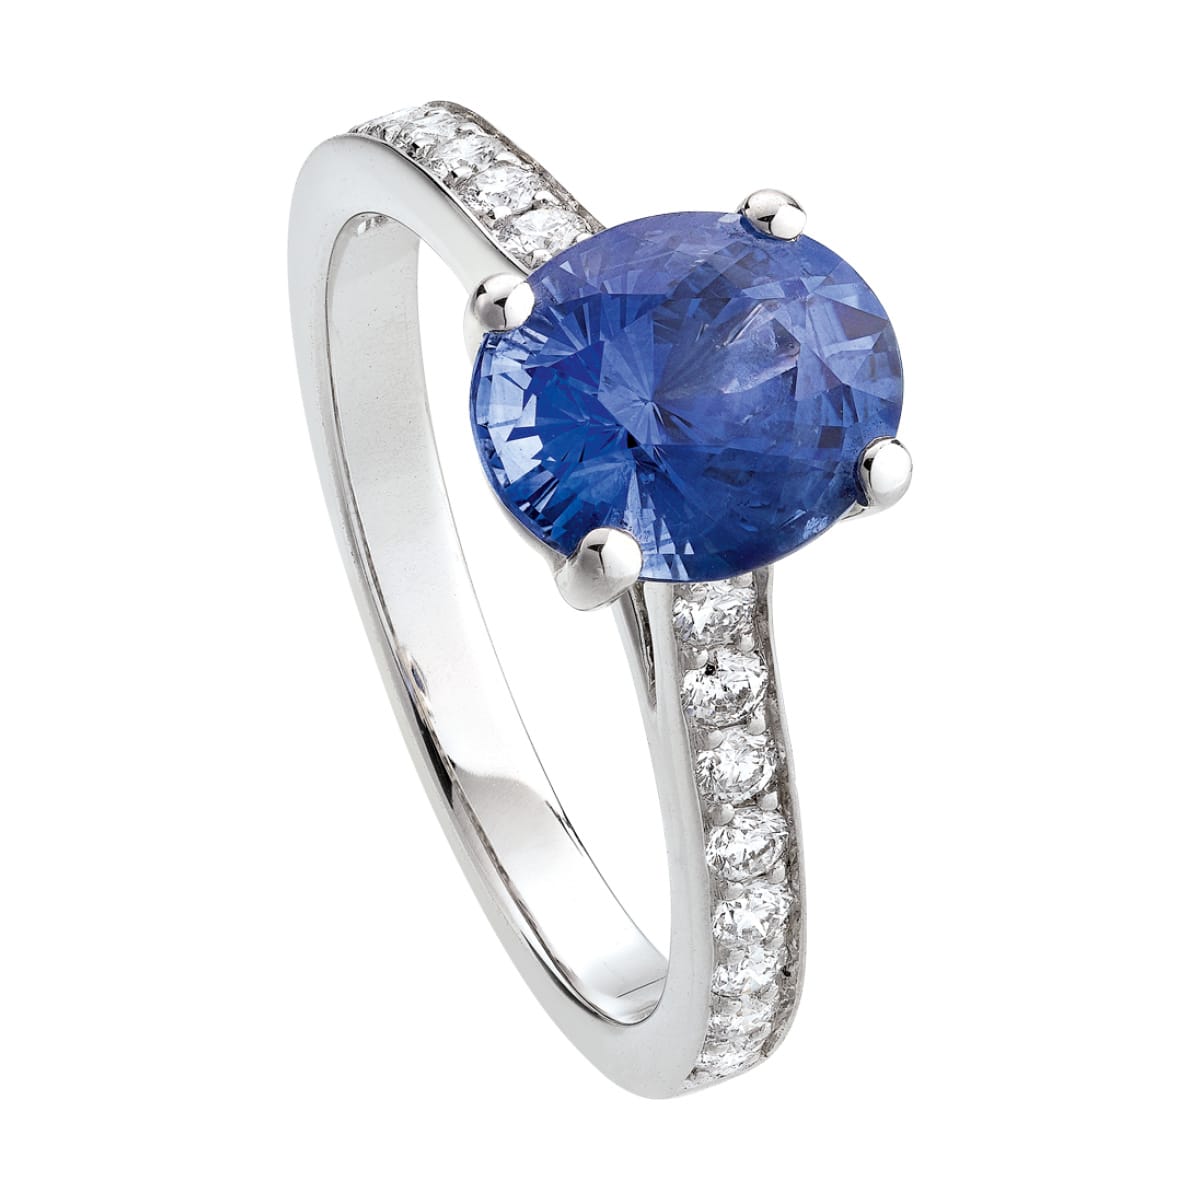 Bague Saphir bleu Diamant